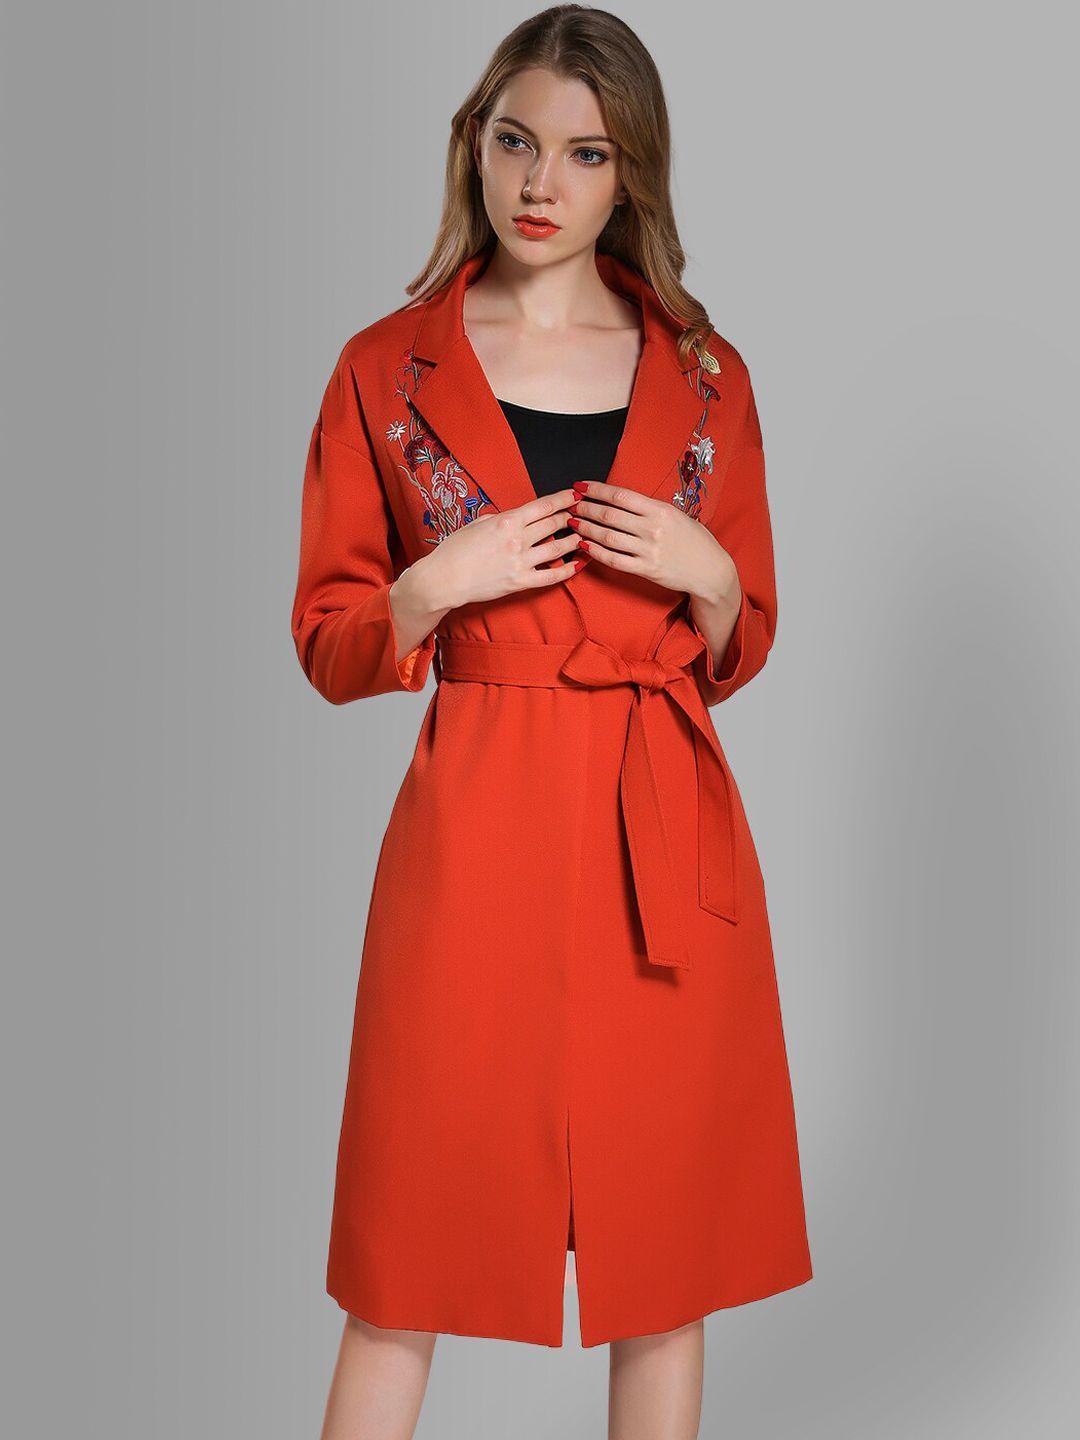 jc collection women orange solid overcoat